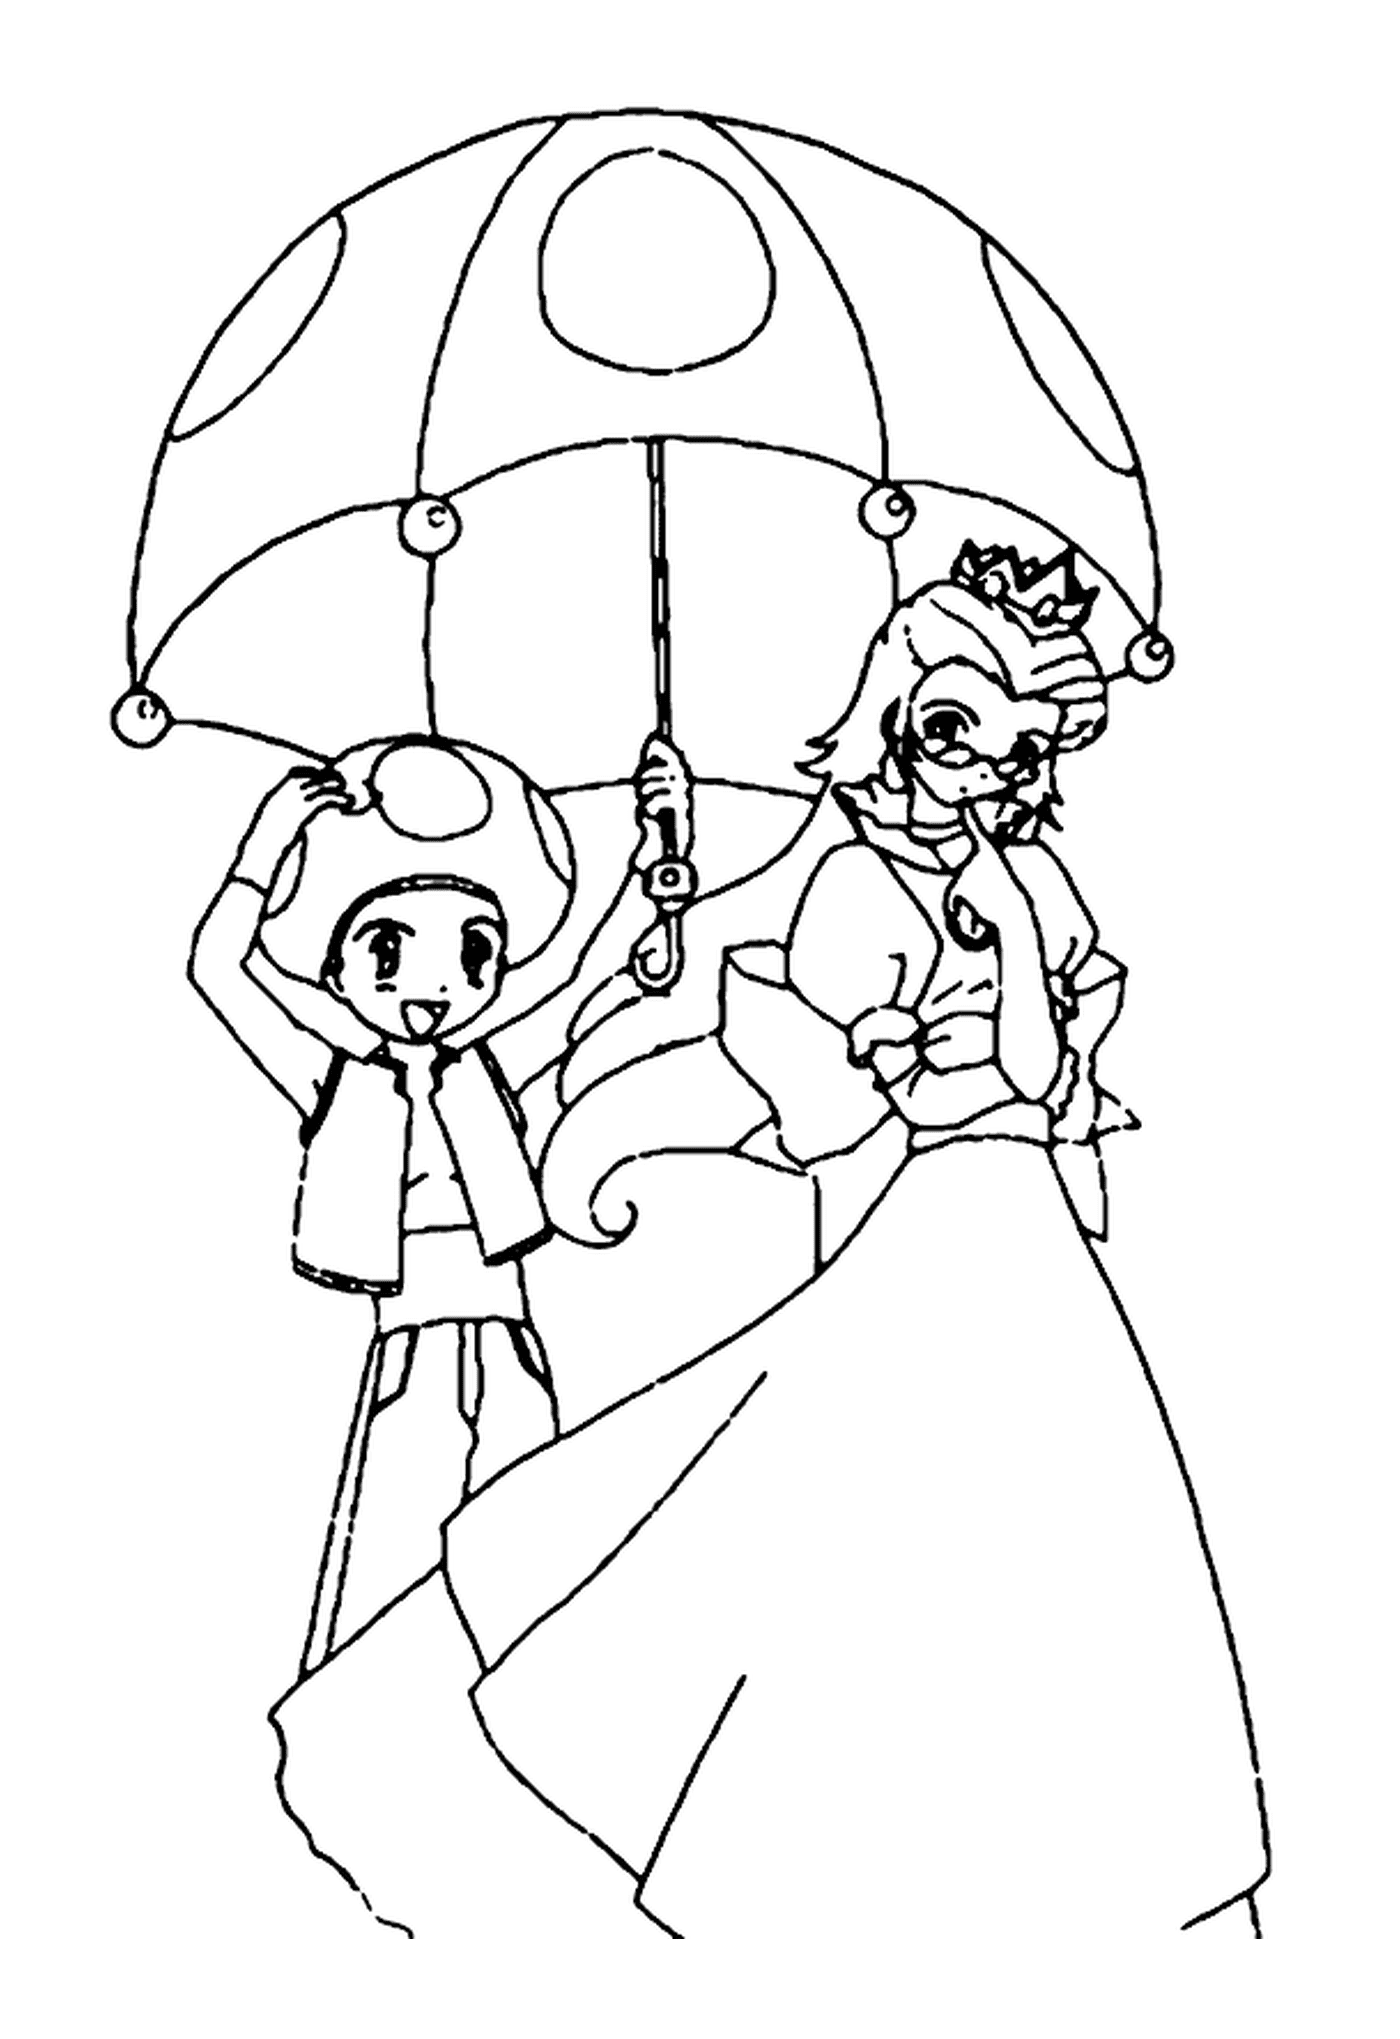  Принцесса и Жаба, пожилая женщина с зонтиком и мальчик с зонтиком 